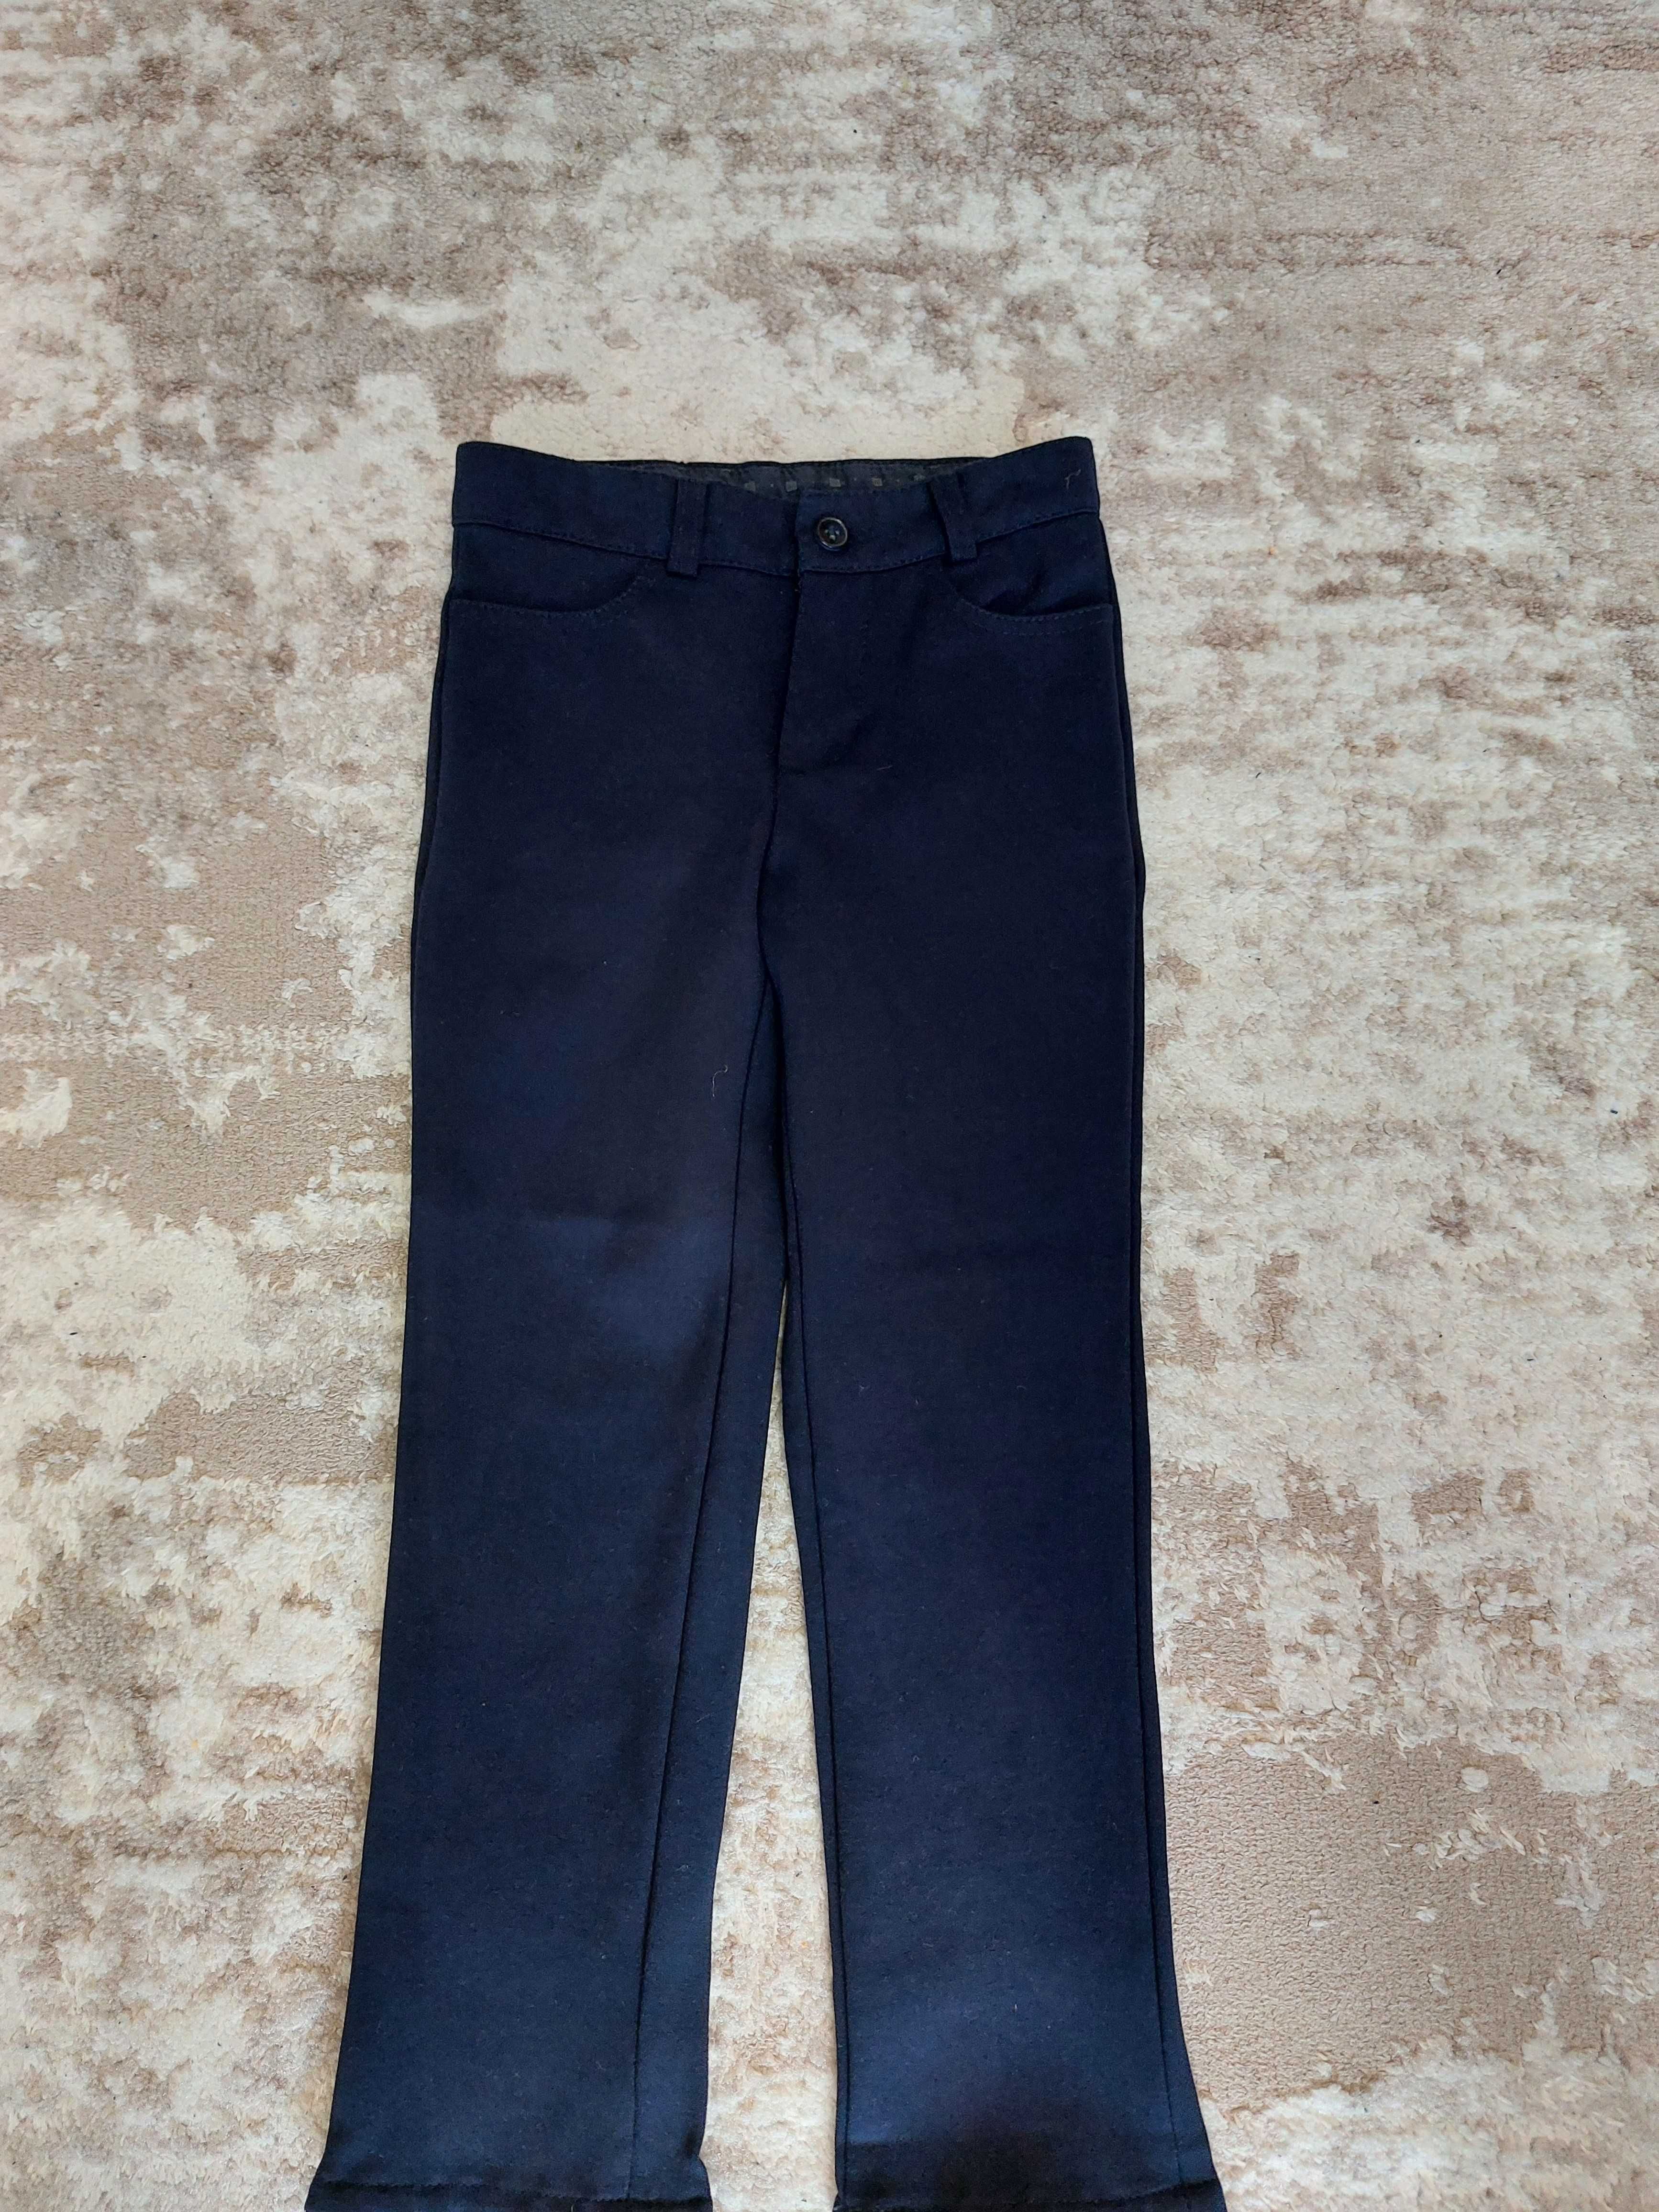 Класичні темно-сині брюки на хлопчика розмір 110